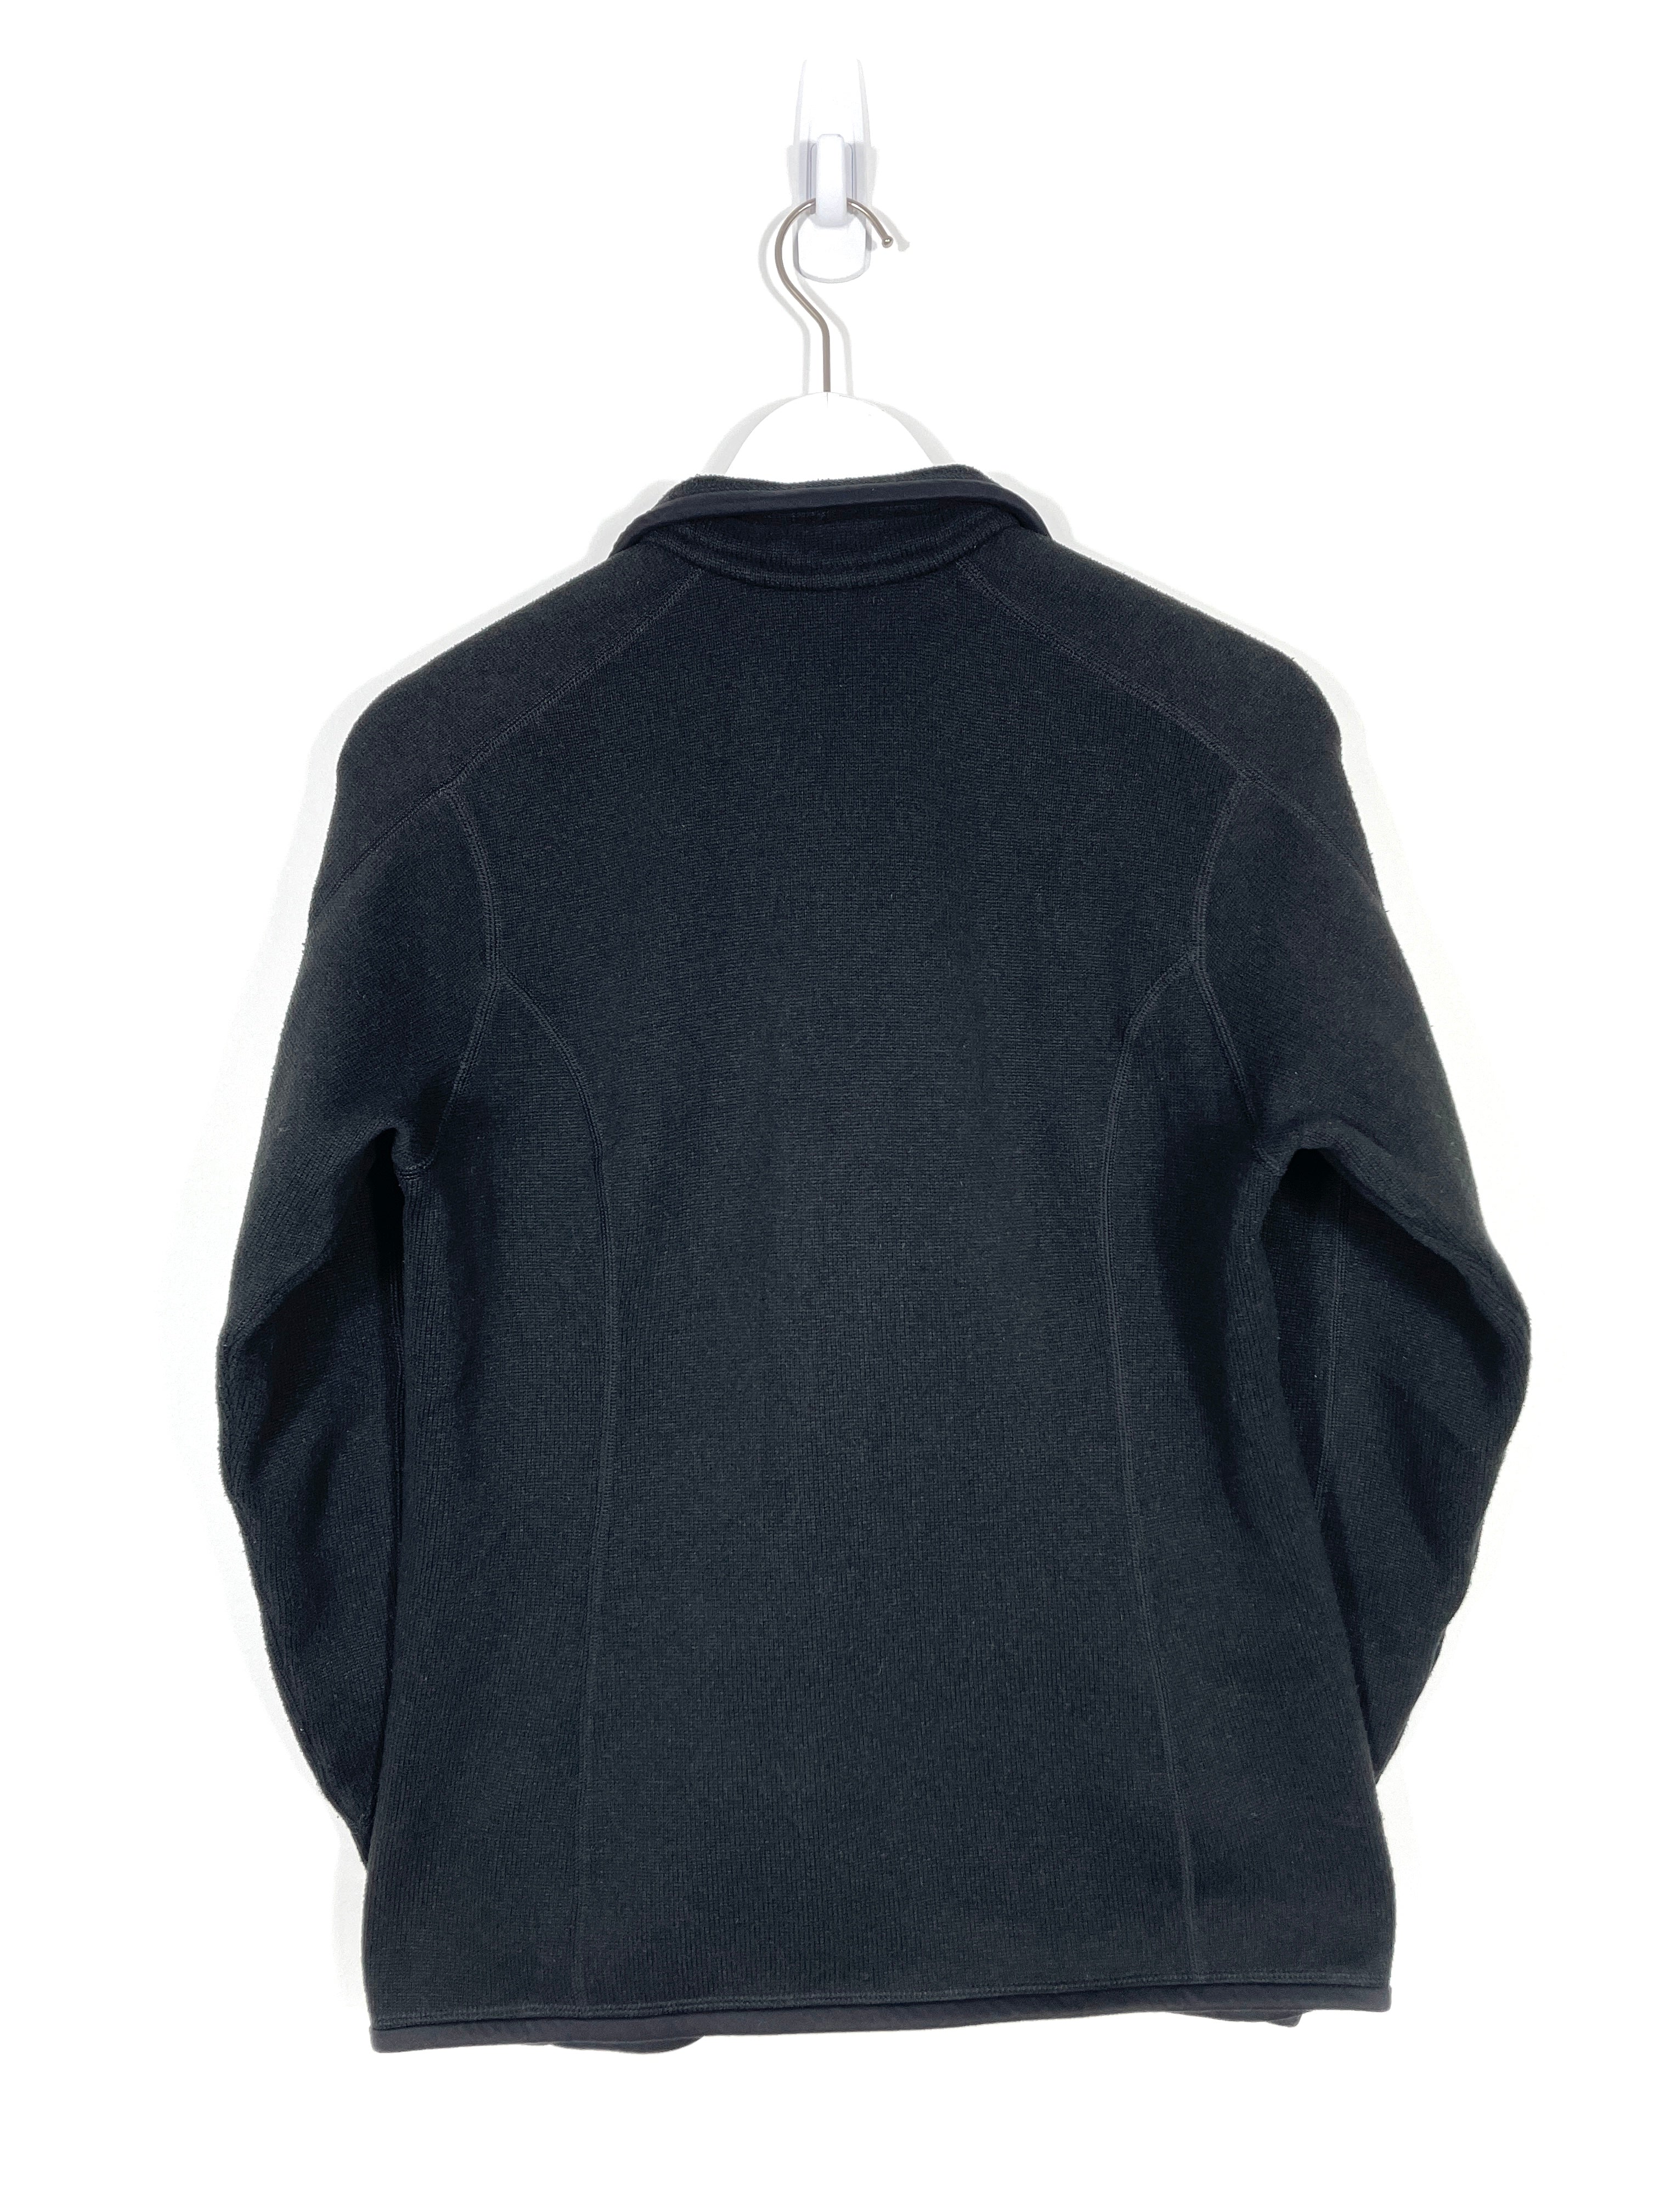 Vintage Patagonia Zip-Up Fleece Sweatshirt - Women's Medium